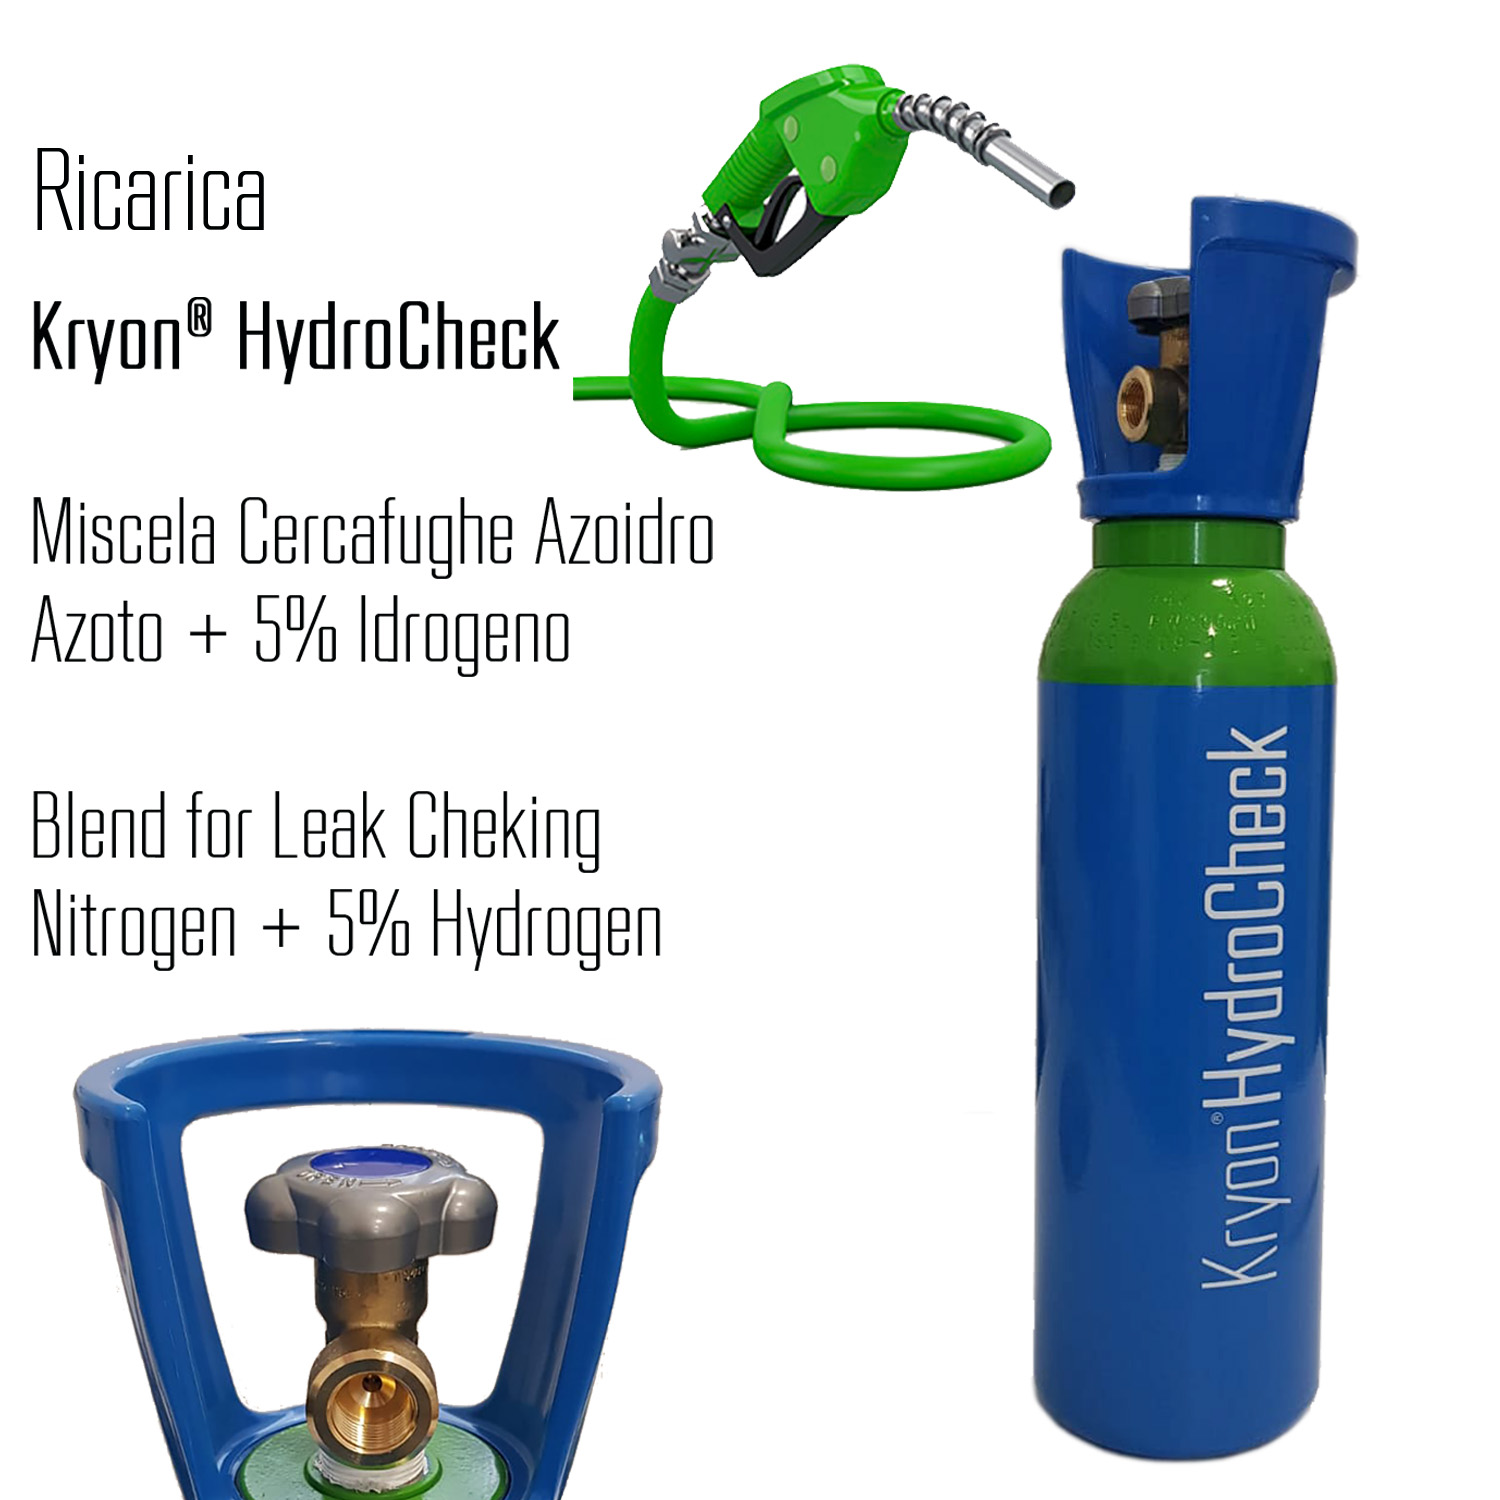 Kryon® HydroCheck - ricarica per bombola 5 litri - 1 mc - azoto 5% idrogeno (miscela cercafughe azoidro) - Foto 1 